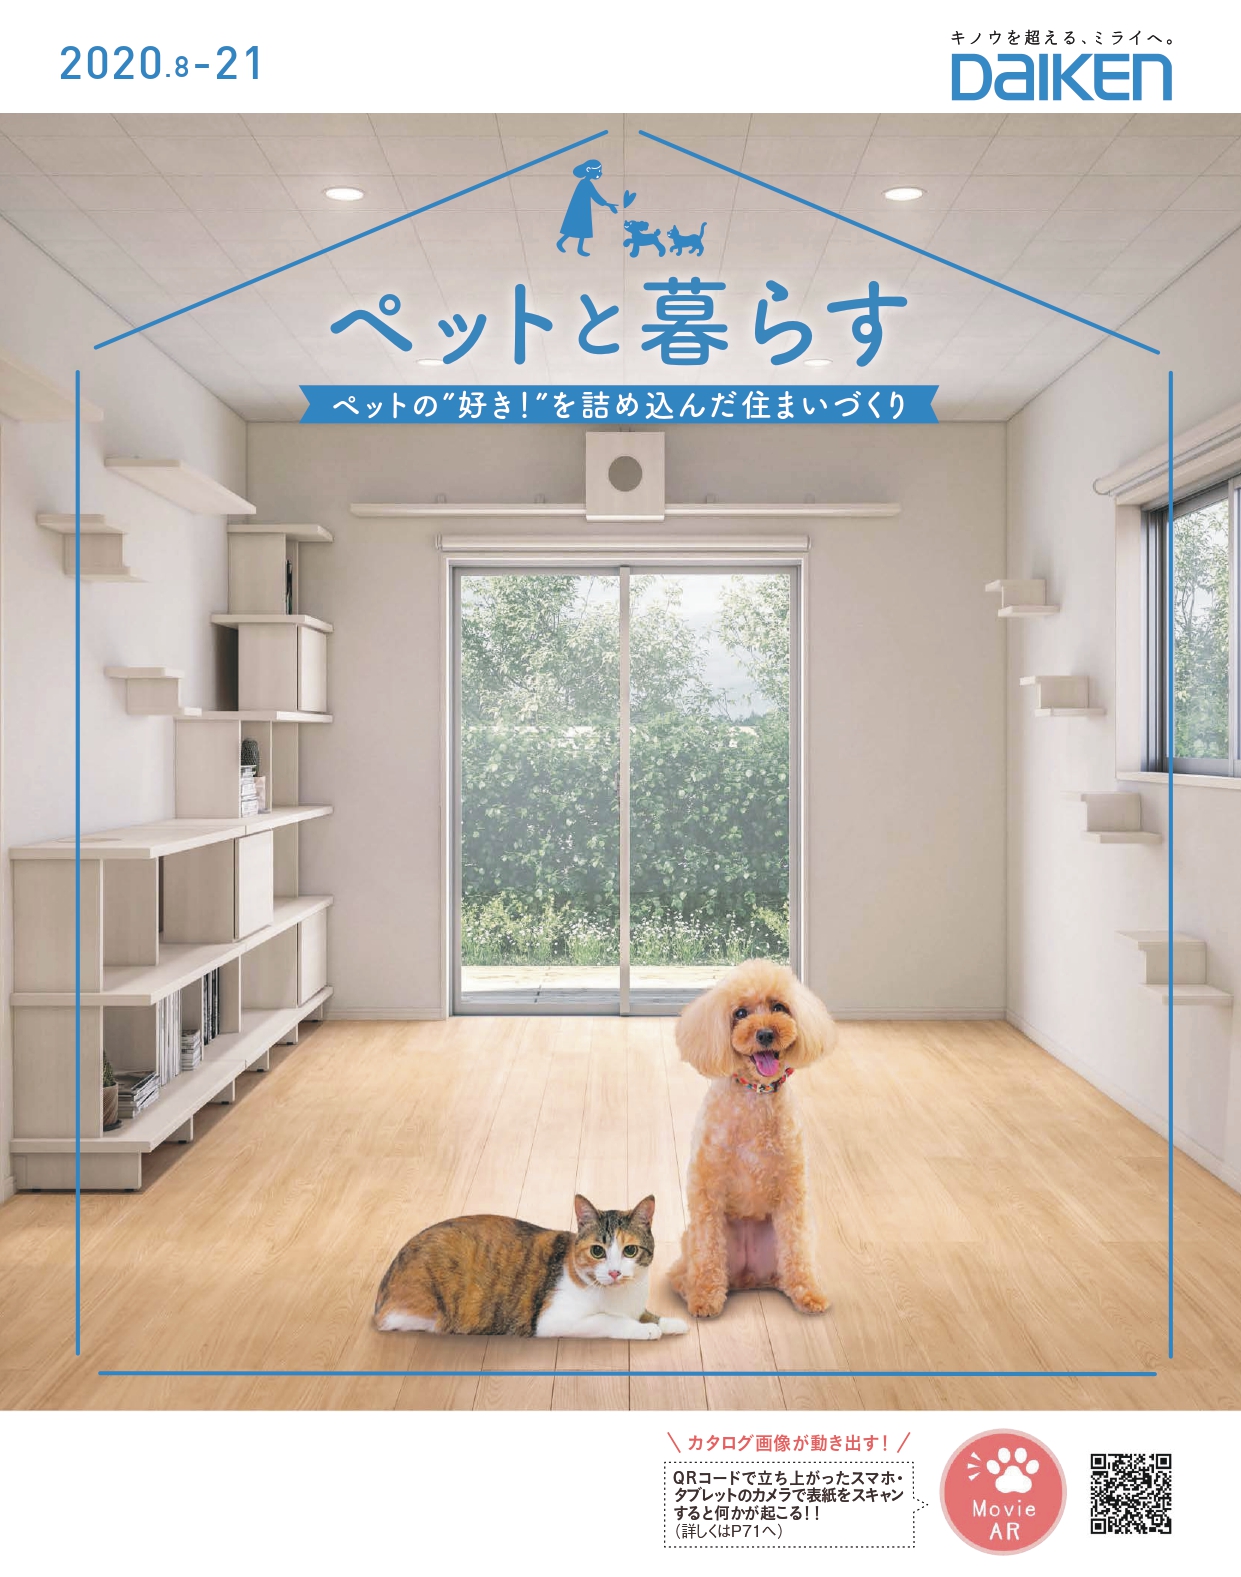 大建工業株式会社が発行するARカタログ「ペットと暮らす」の表紙画像